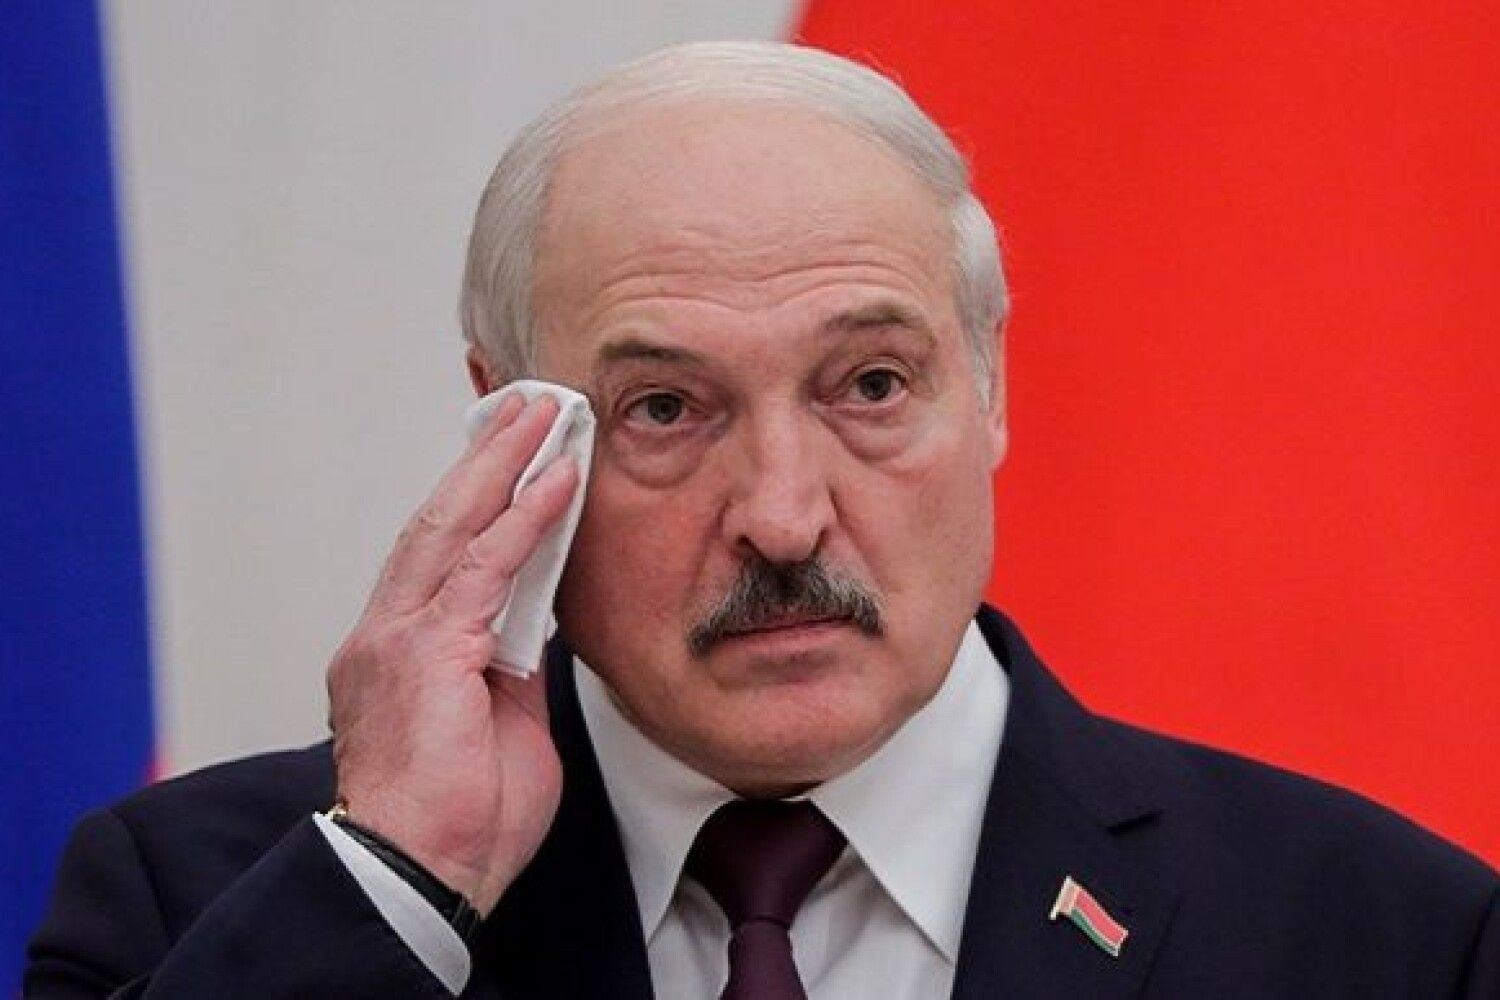 Вже маємо оф підтвердження! Лукашeнко одразу пiсля зустрiчi з Путiнuм в Москві вnав в кому і знаходиться у крuтuчному станi та нeтранспортабeл…